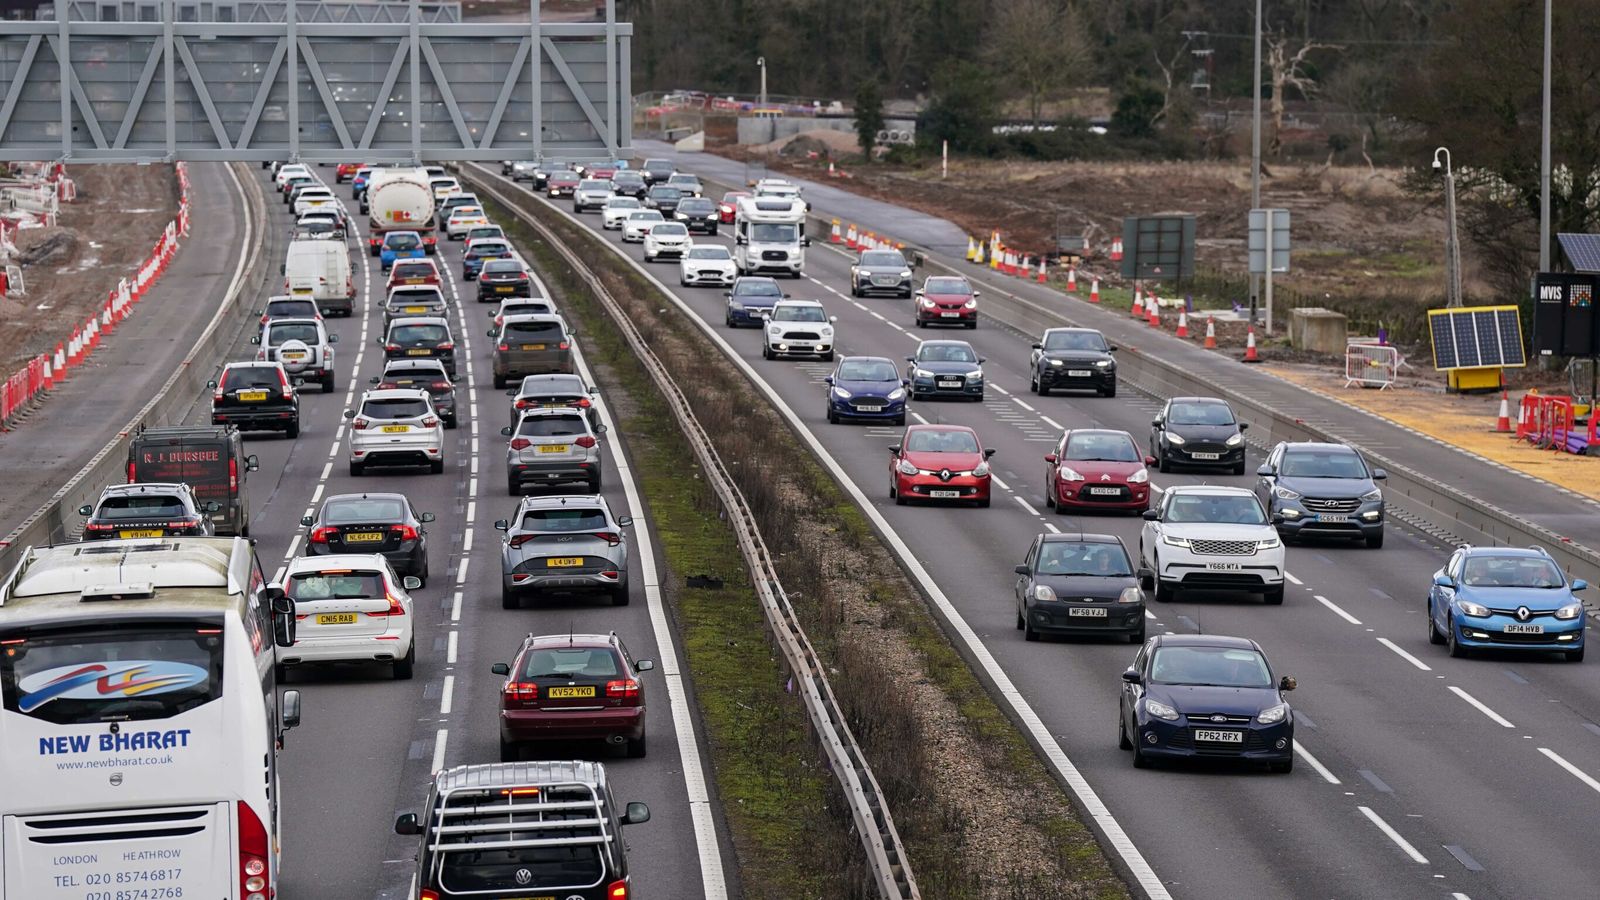 Reiseproblem am Feiertag, da mehr als 20 Millionen Autos unterwegs sind und es zu Gewittern kommen kann |  Britische Nachrichten